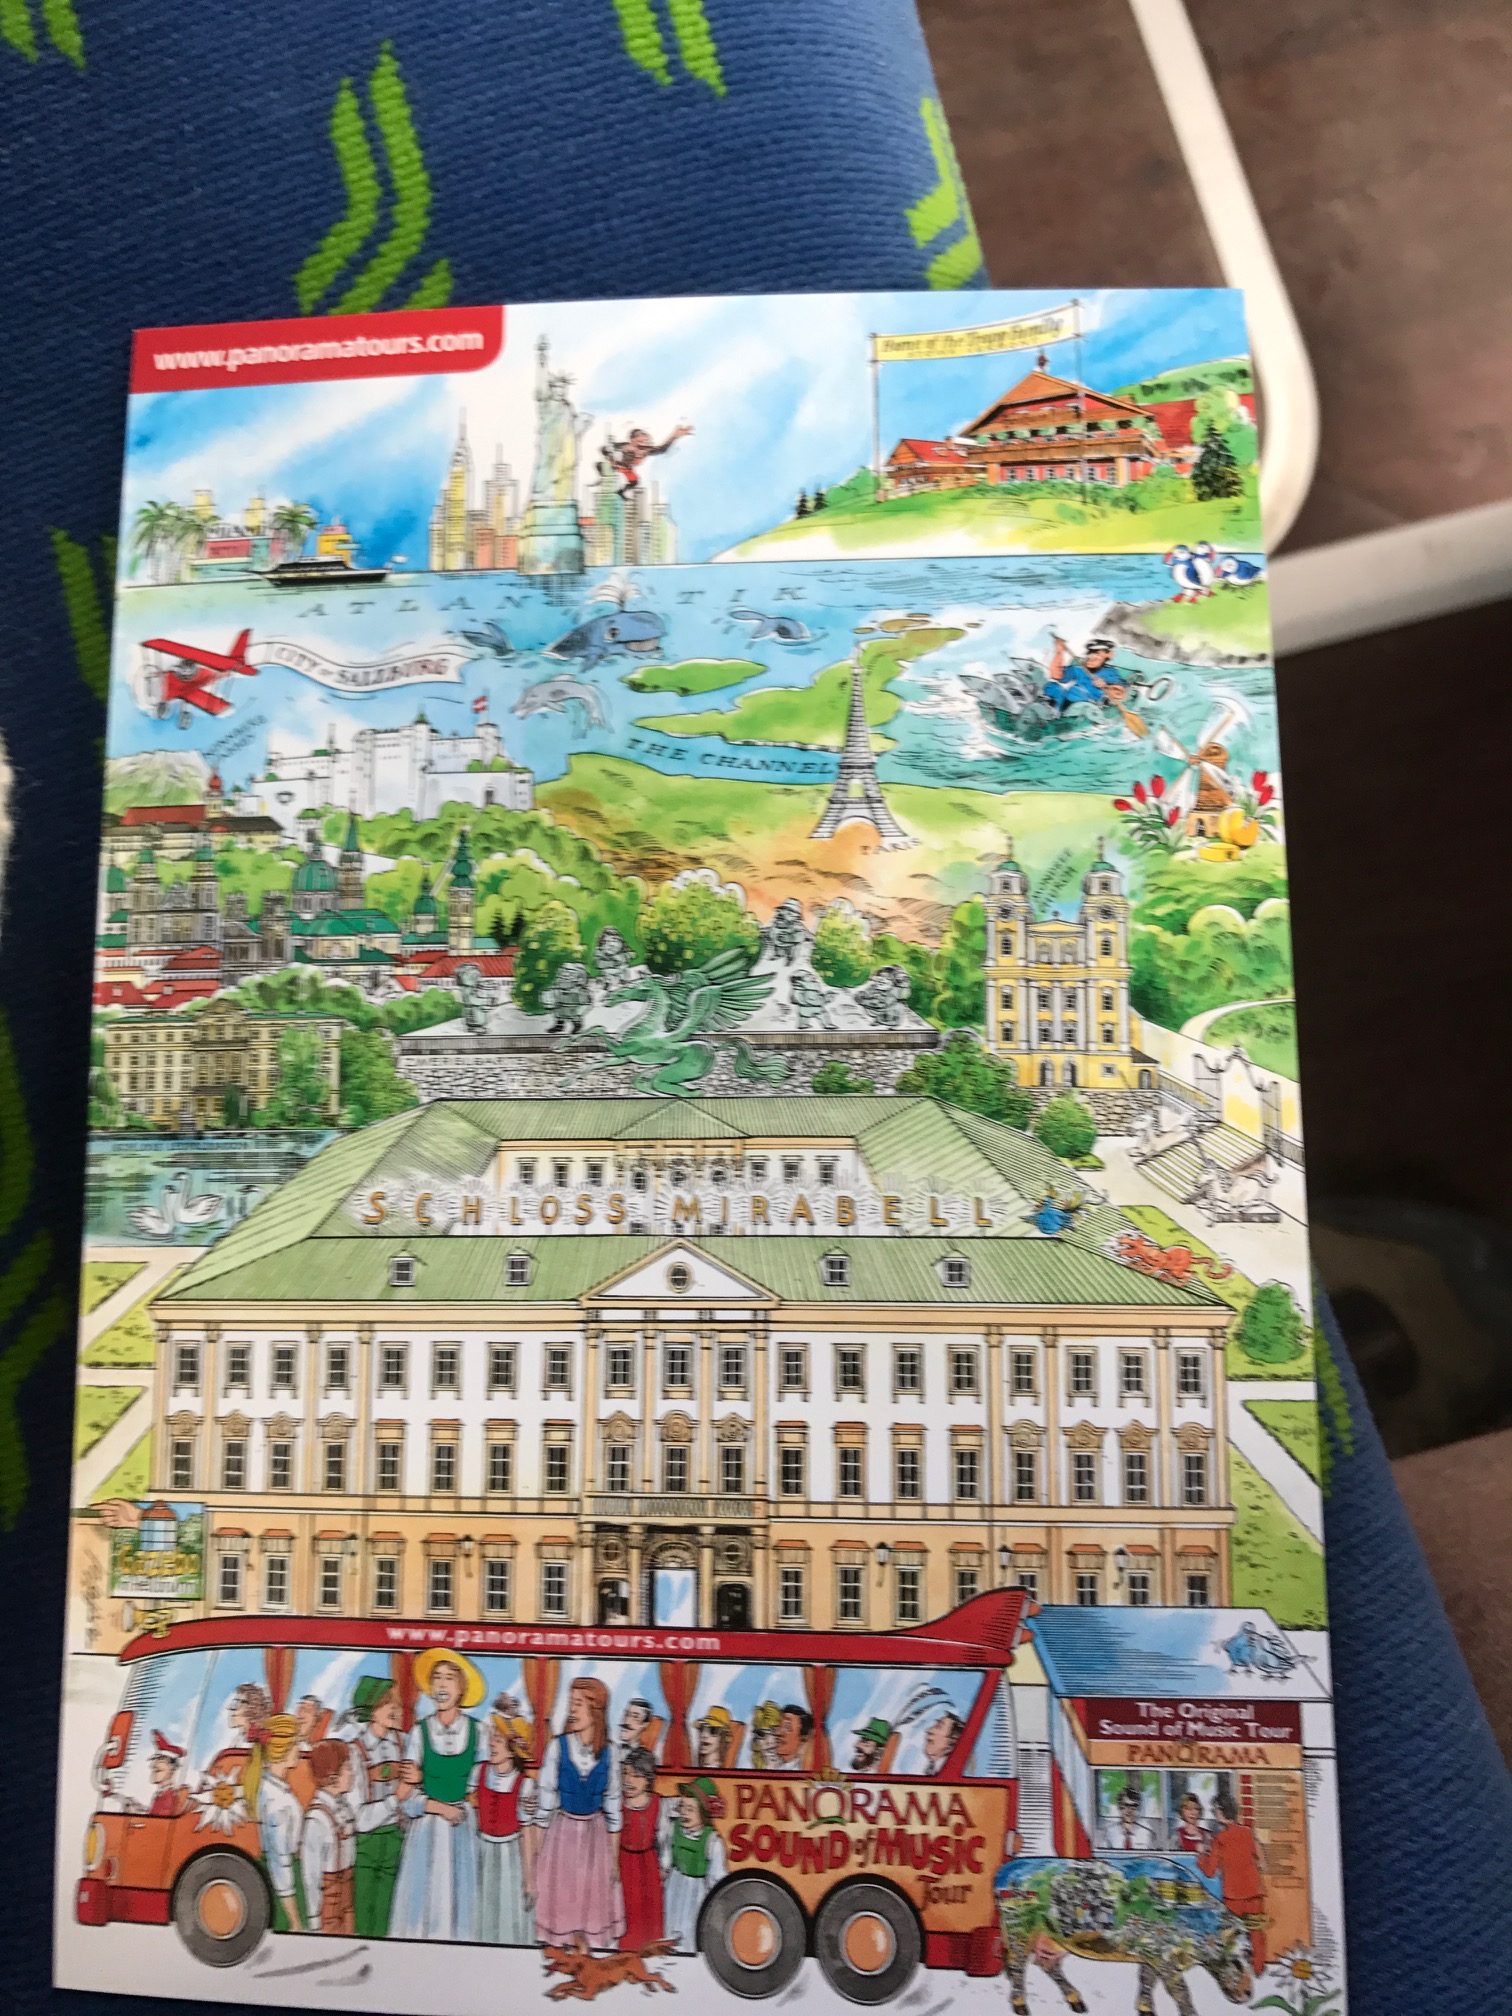 Salzburg: The souvenir card...